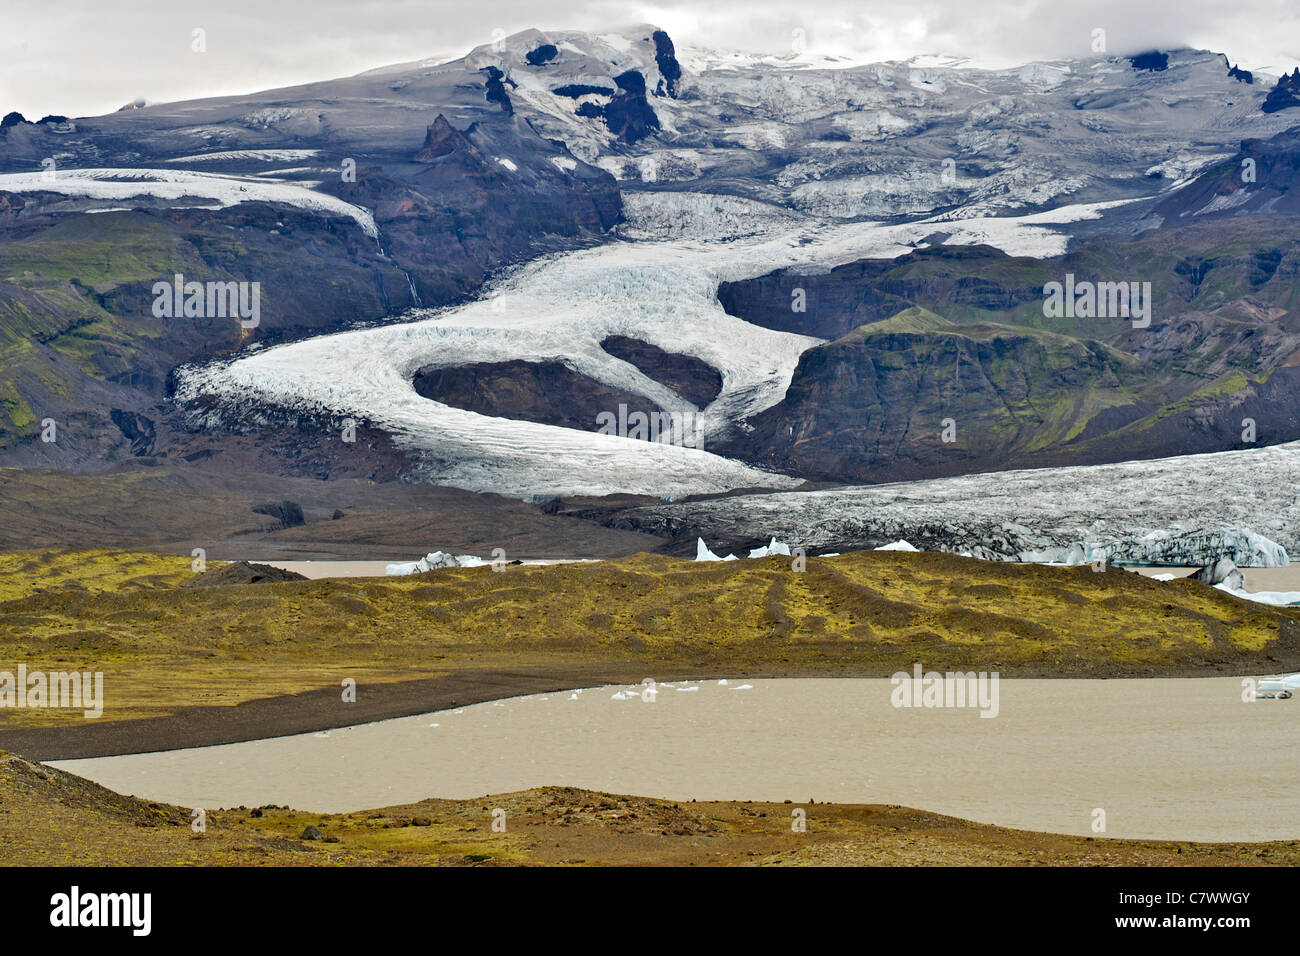 Fjallsarlon lago e il ghiacciaio fjallsjokull, parte dell'imponente ghiacciaio Vatnajokull nel sud-est dell'Islanda. Foto Stock